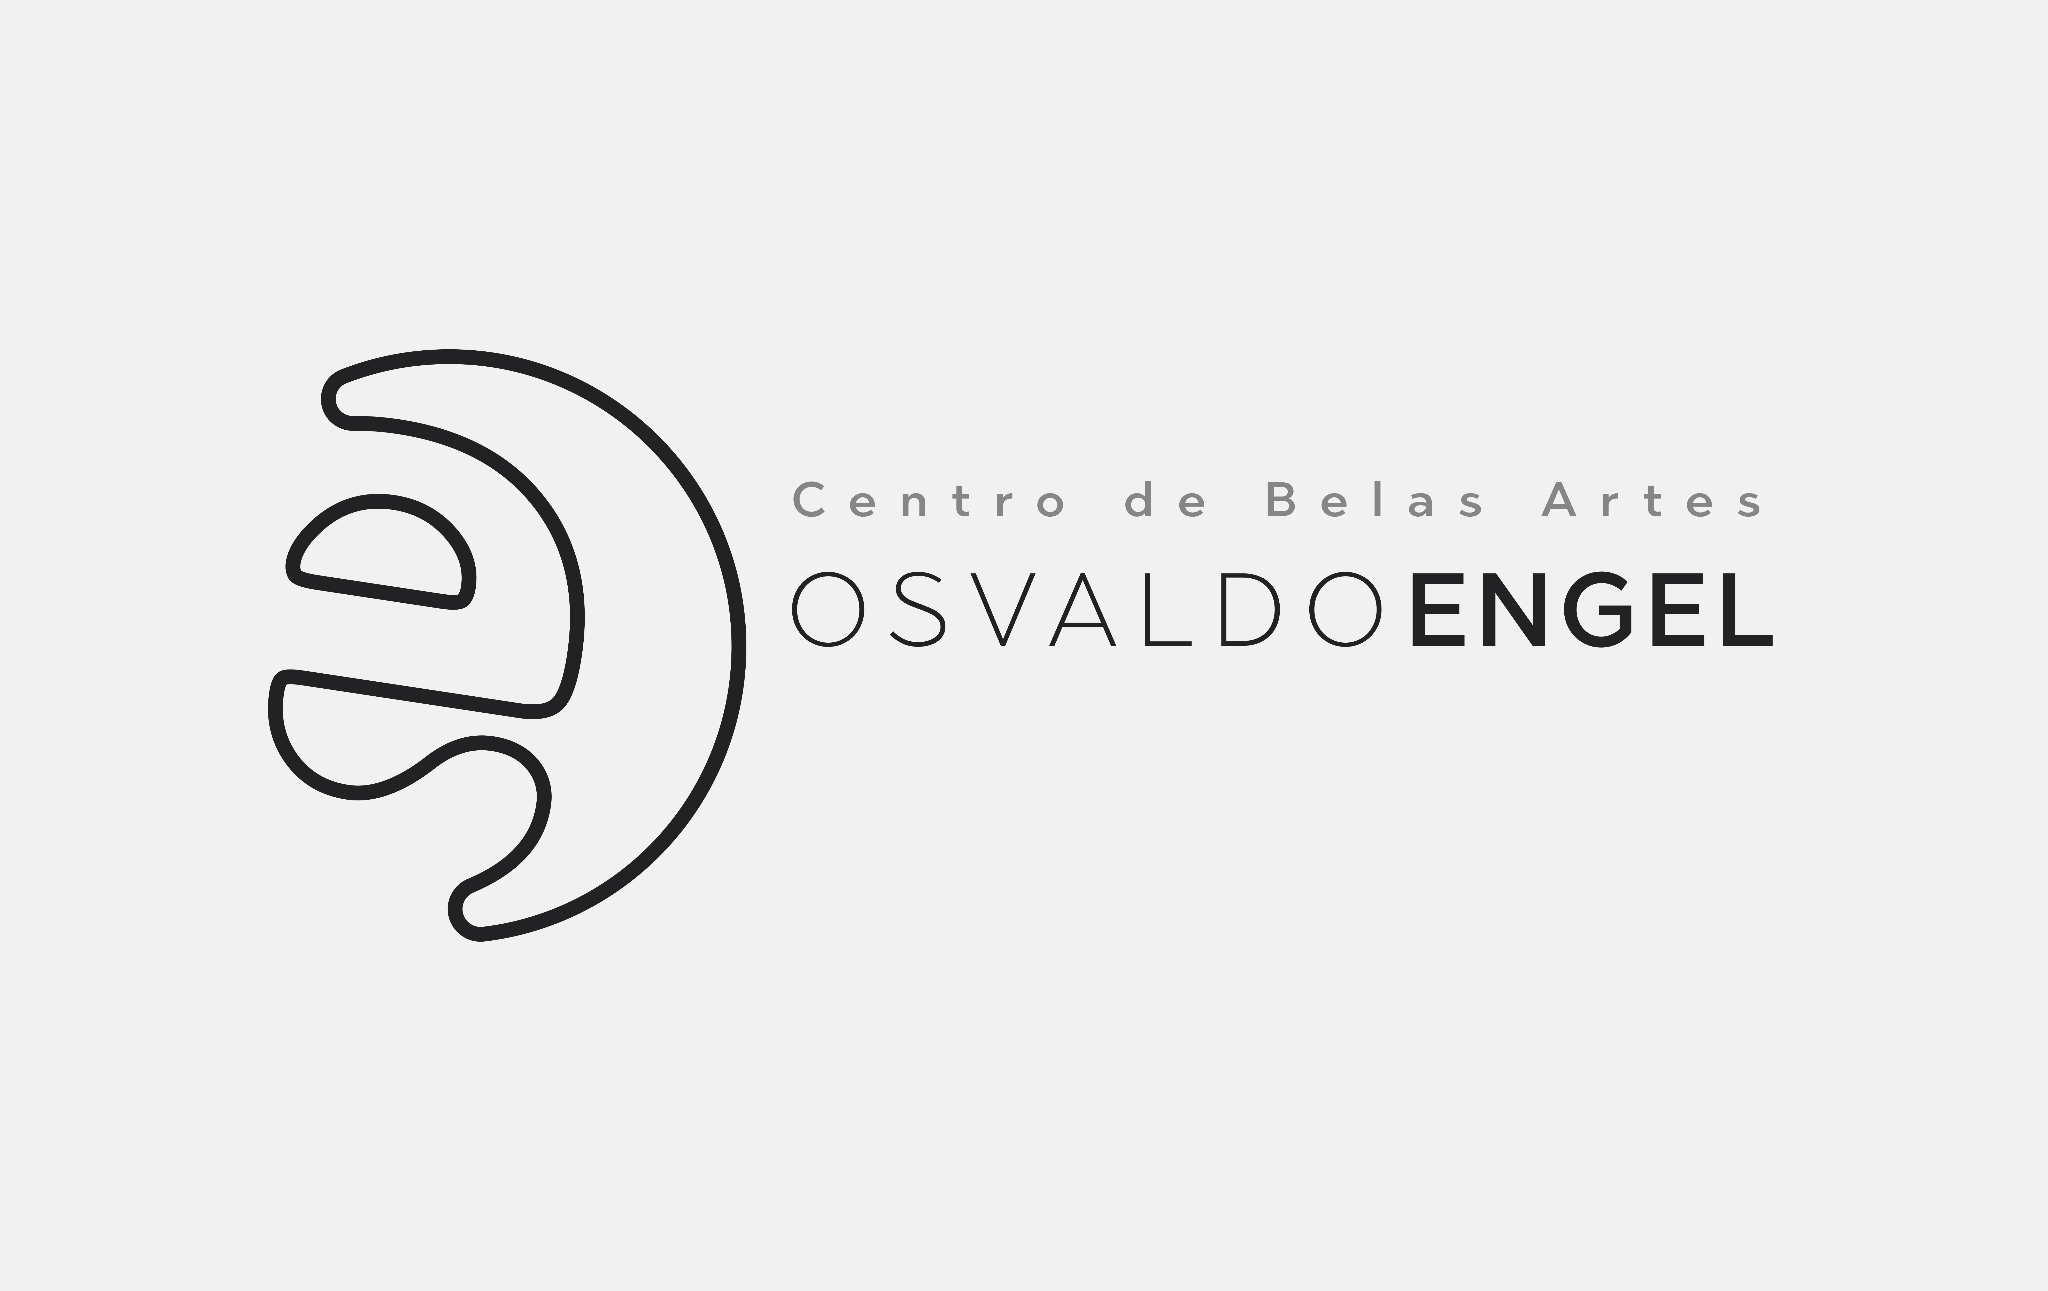  Solenidade no pr?ximo domingo marca os 60 anos e nova fase do Centro de Belas Artes Osvaldo Engel